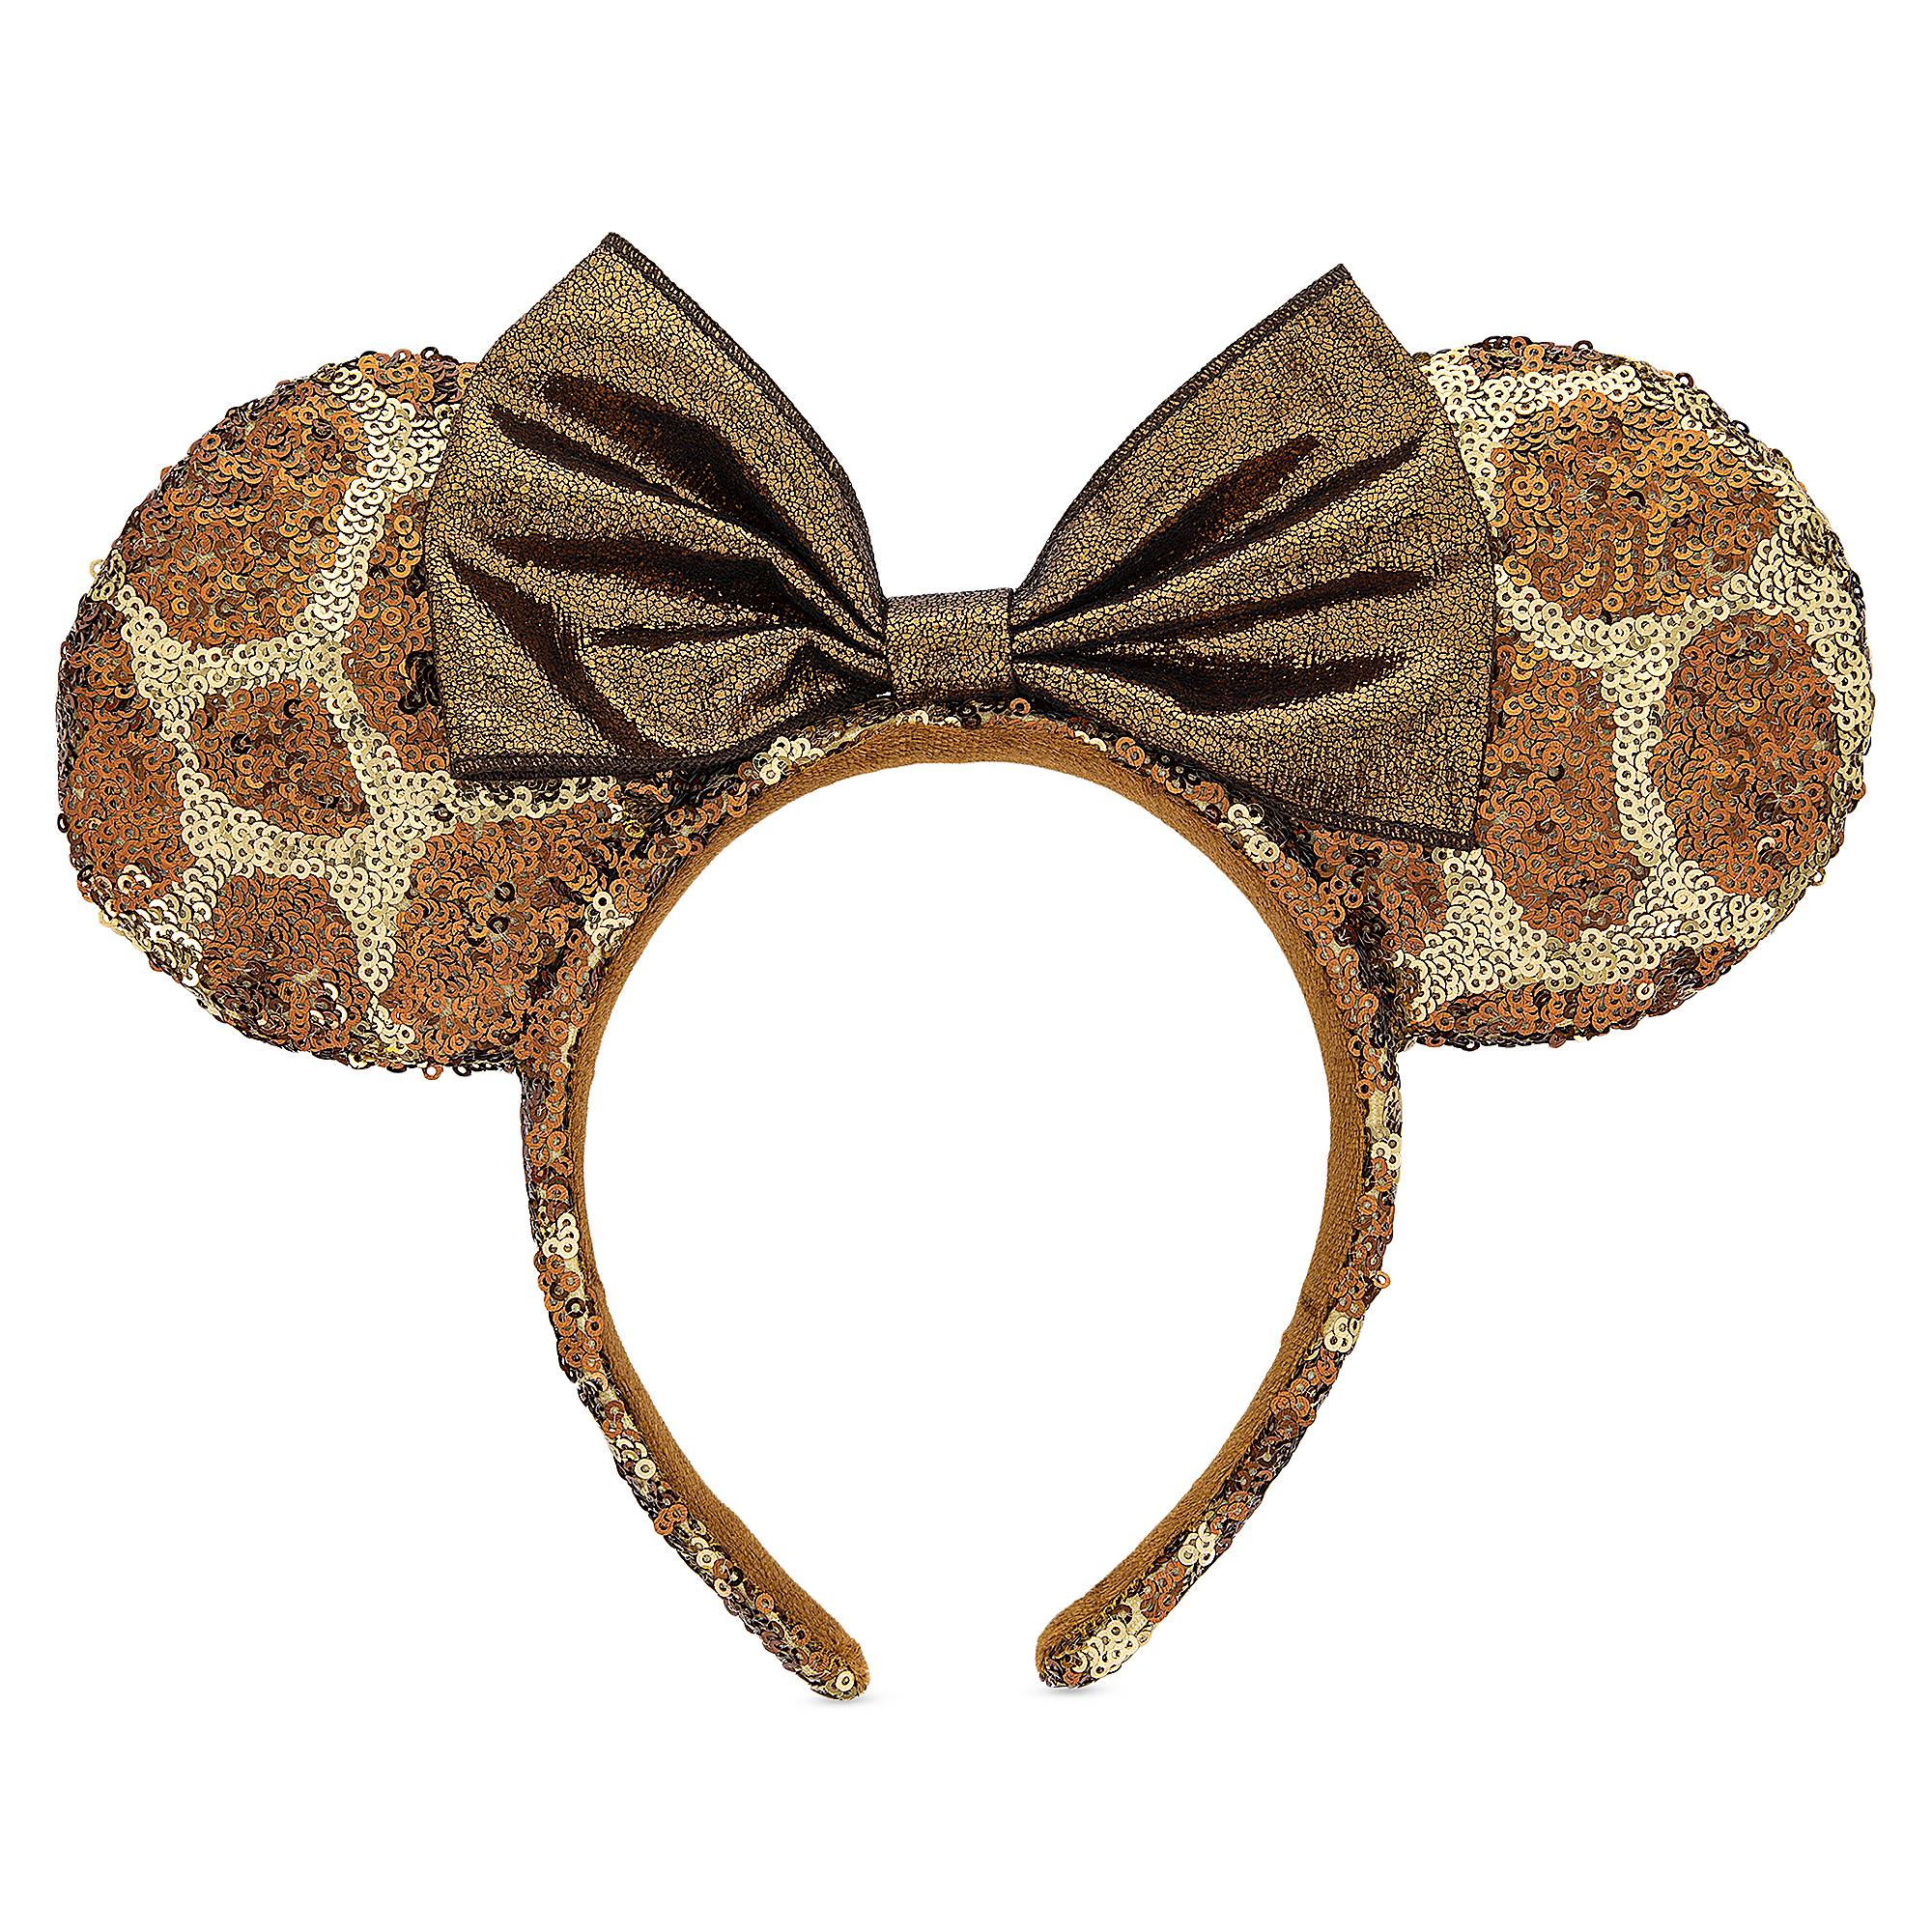 Minnie Mouse Animal Print Ear Headband - Disney's Animal Kingdom image